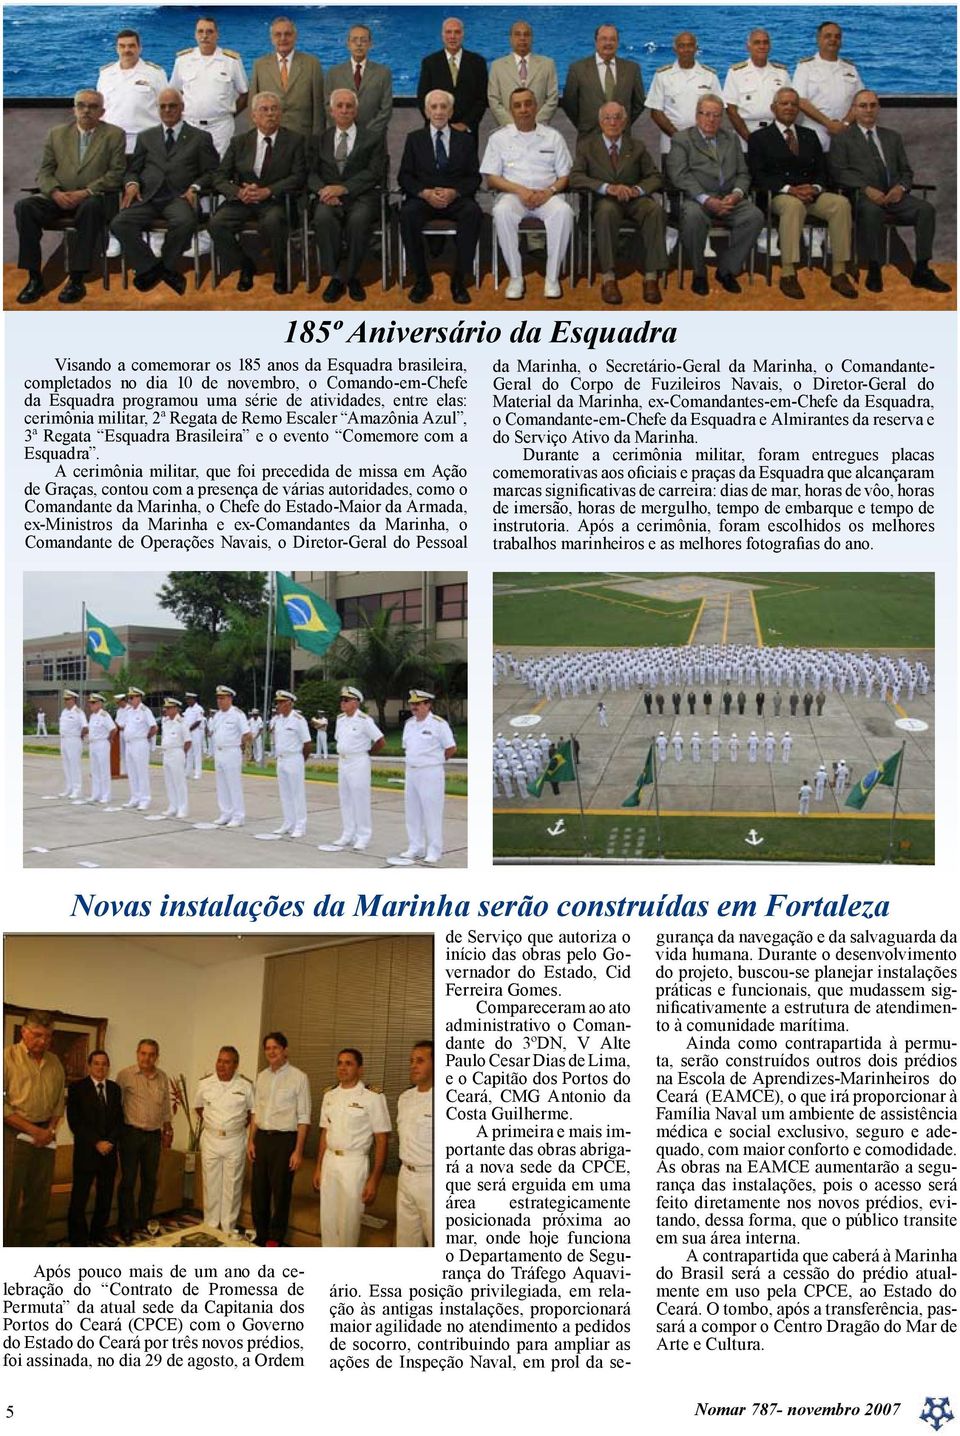 A cerimônia militar, que foi precedida de missa em Ação de Graças, contou com a presença de várias autoridades, como o Comandante da Marinha, o Chefe do Estado-Maior da Armada, ex-ministros da